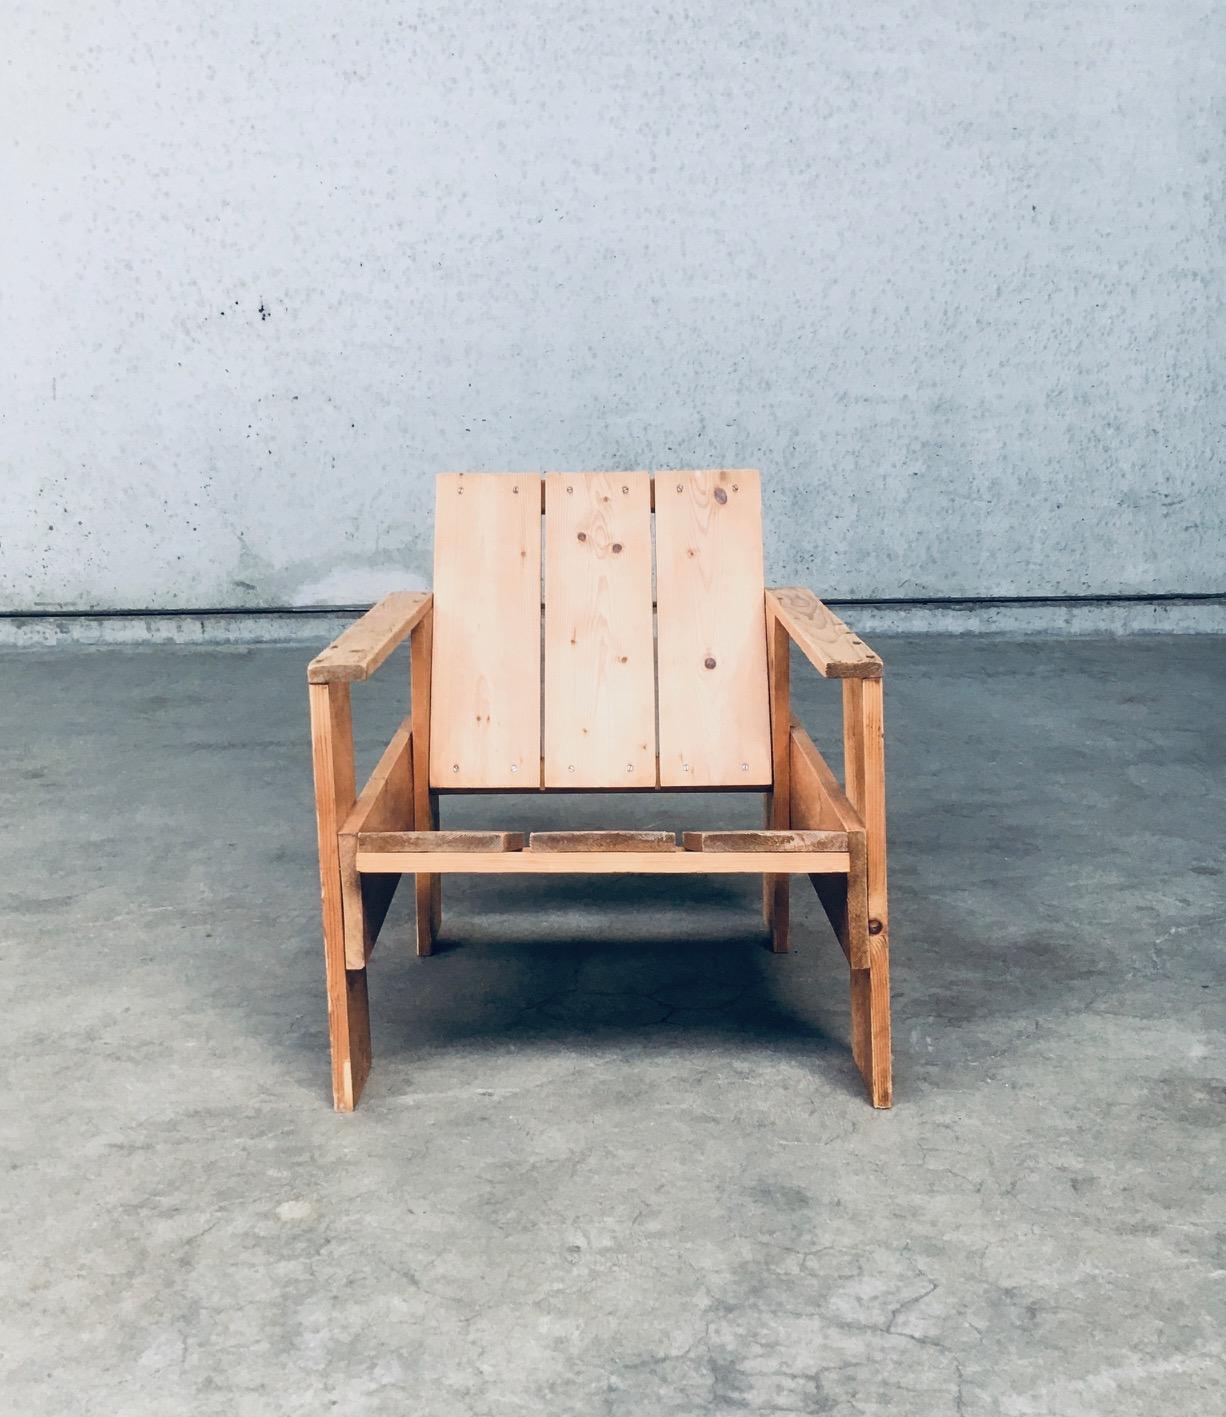 De Stijl Movement Dutch Design Pine CRATE Chair by Gerrit Rietveld For Sale 5